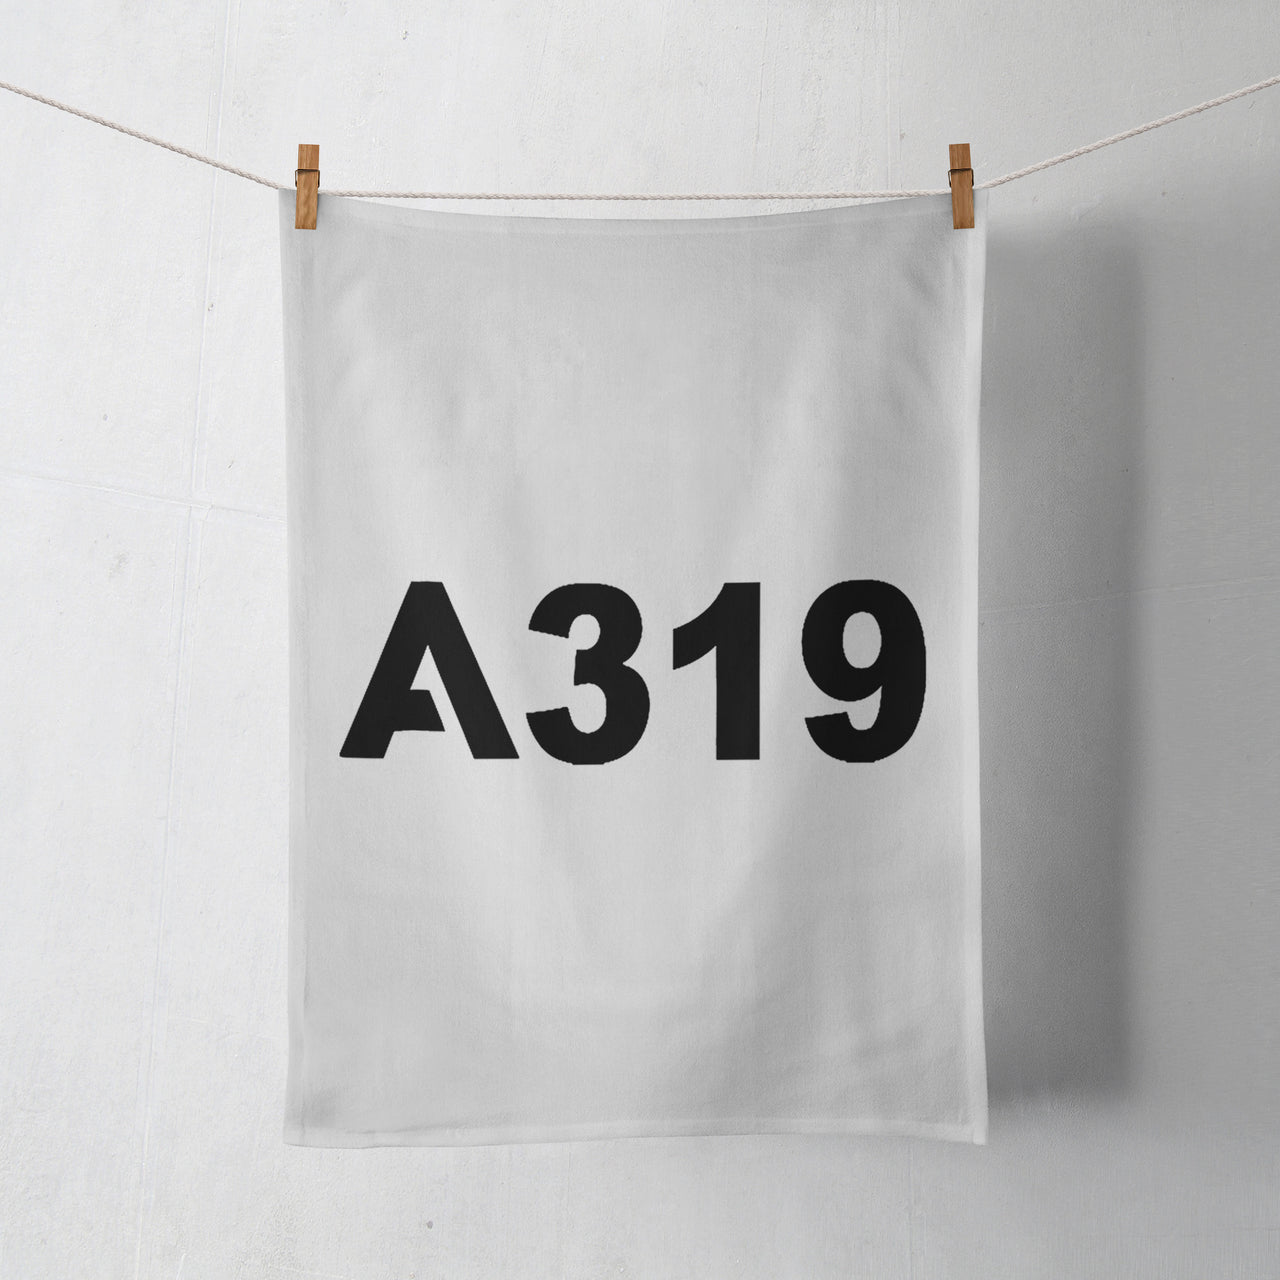 A319 Flat Text Designed Towels